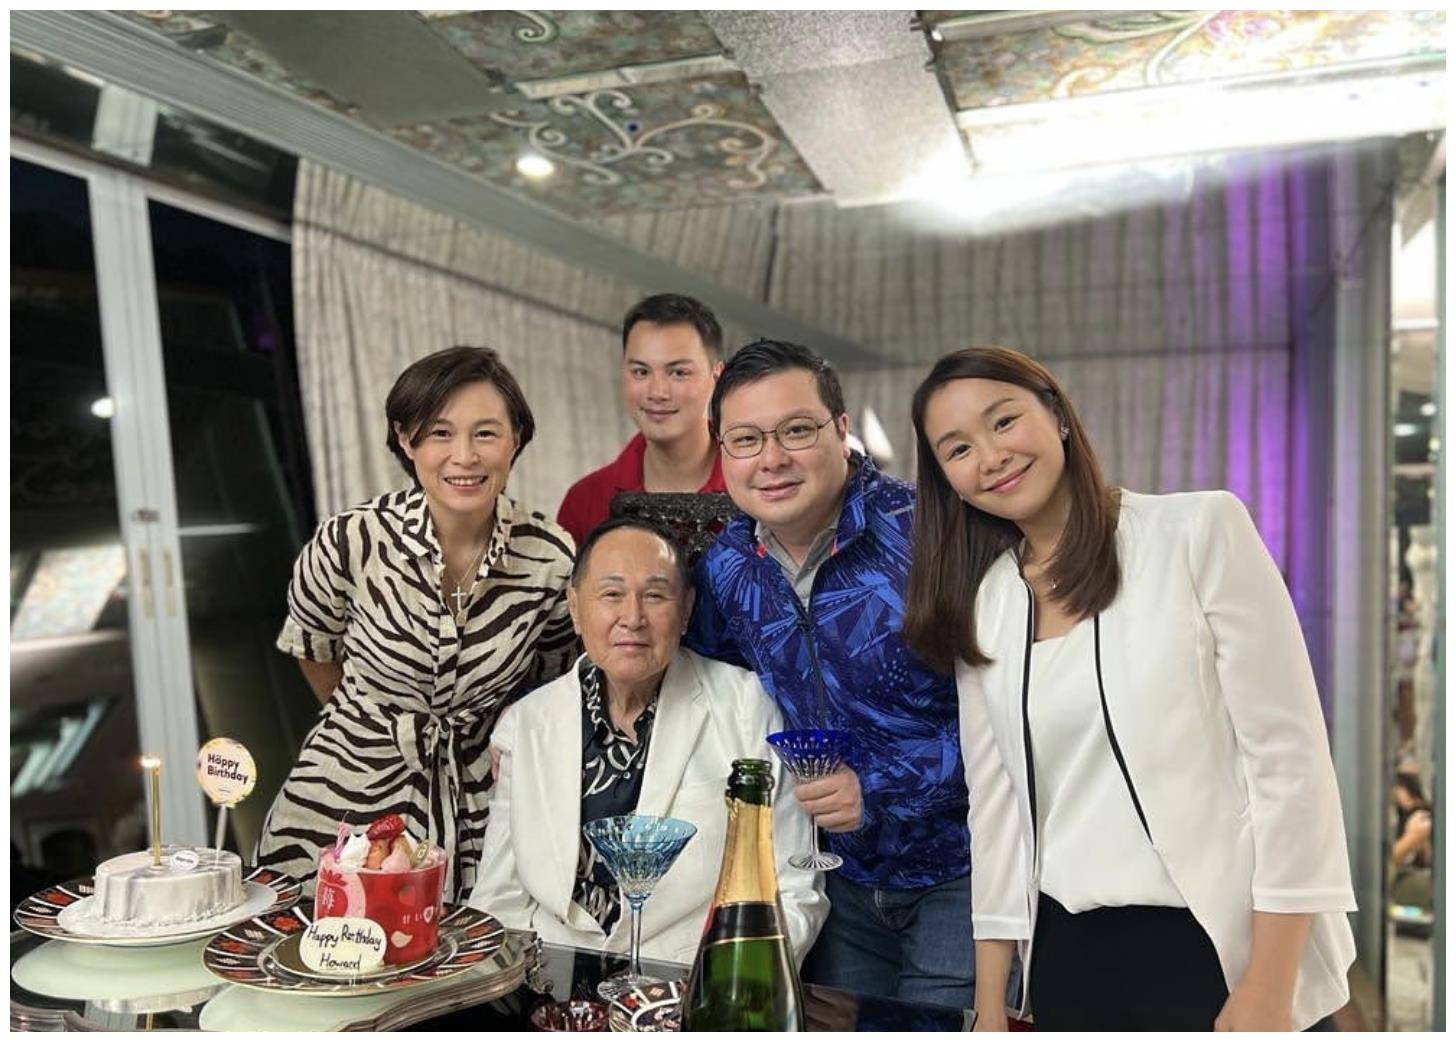 87岁富商赵世曾公开近况,称身体健康有交往对象,一人生活不寂寞